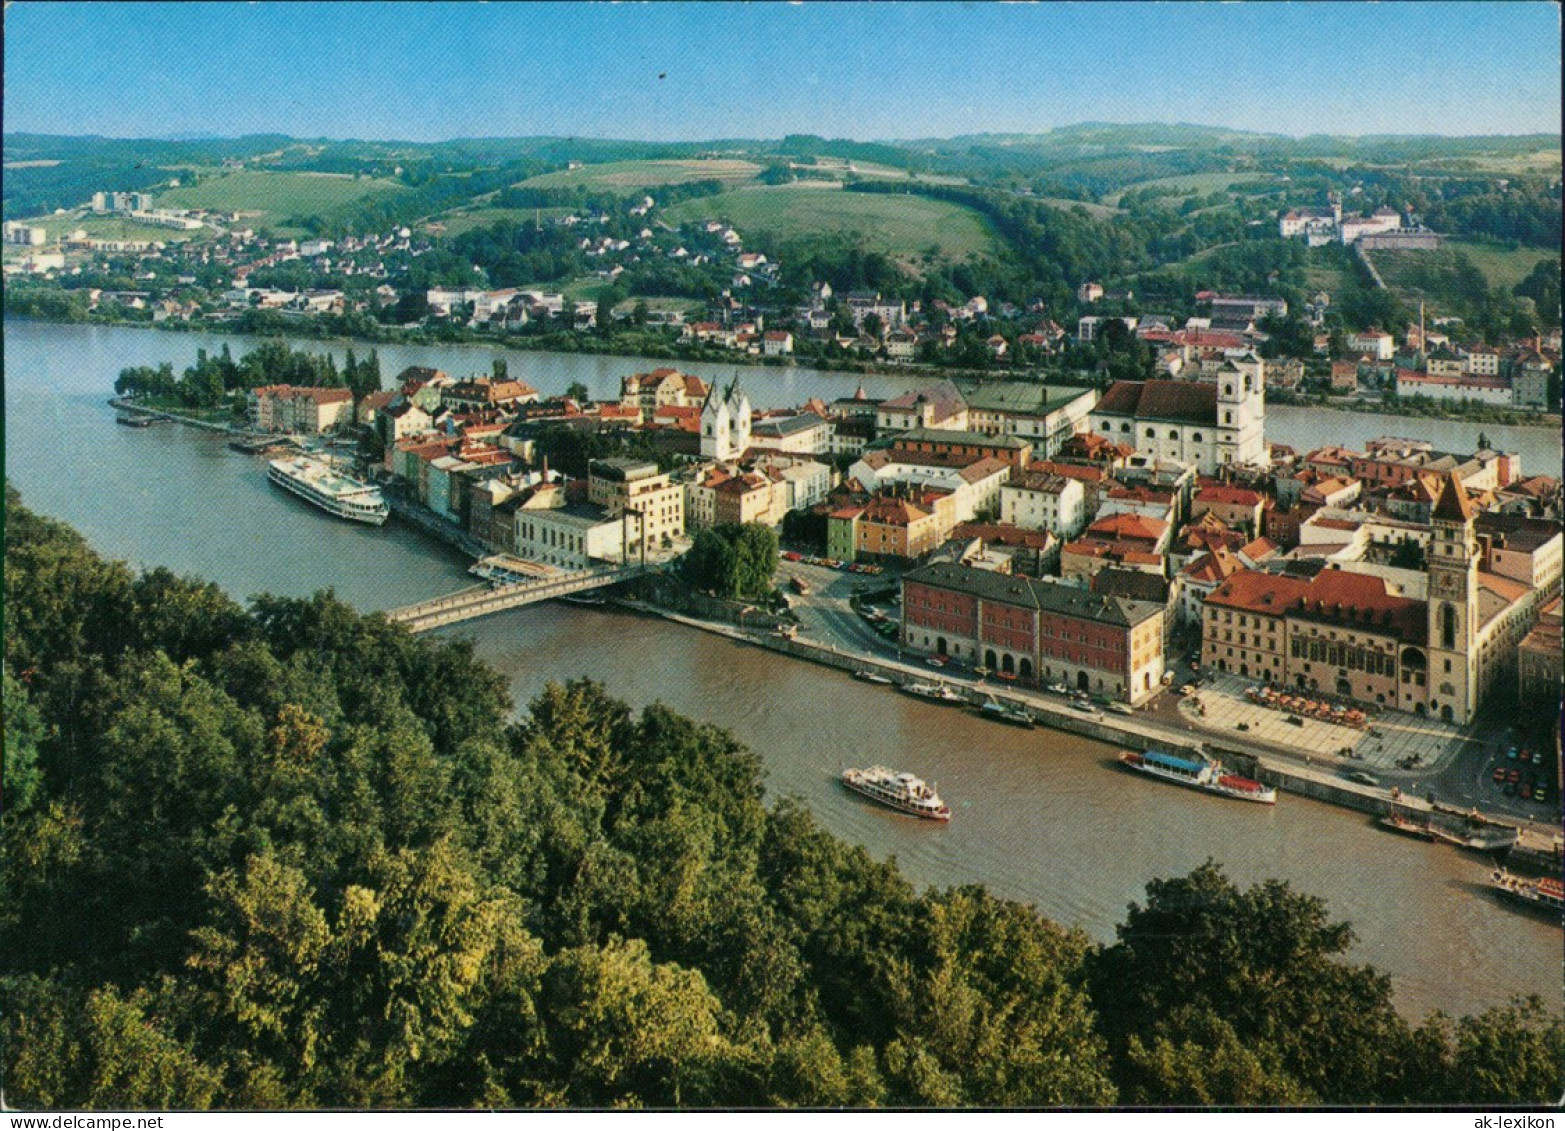 Passau Luftbild Partie Am Zusammenfluß Von Donau, Inn Und Ilz 1987 - Passau